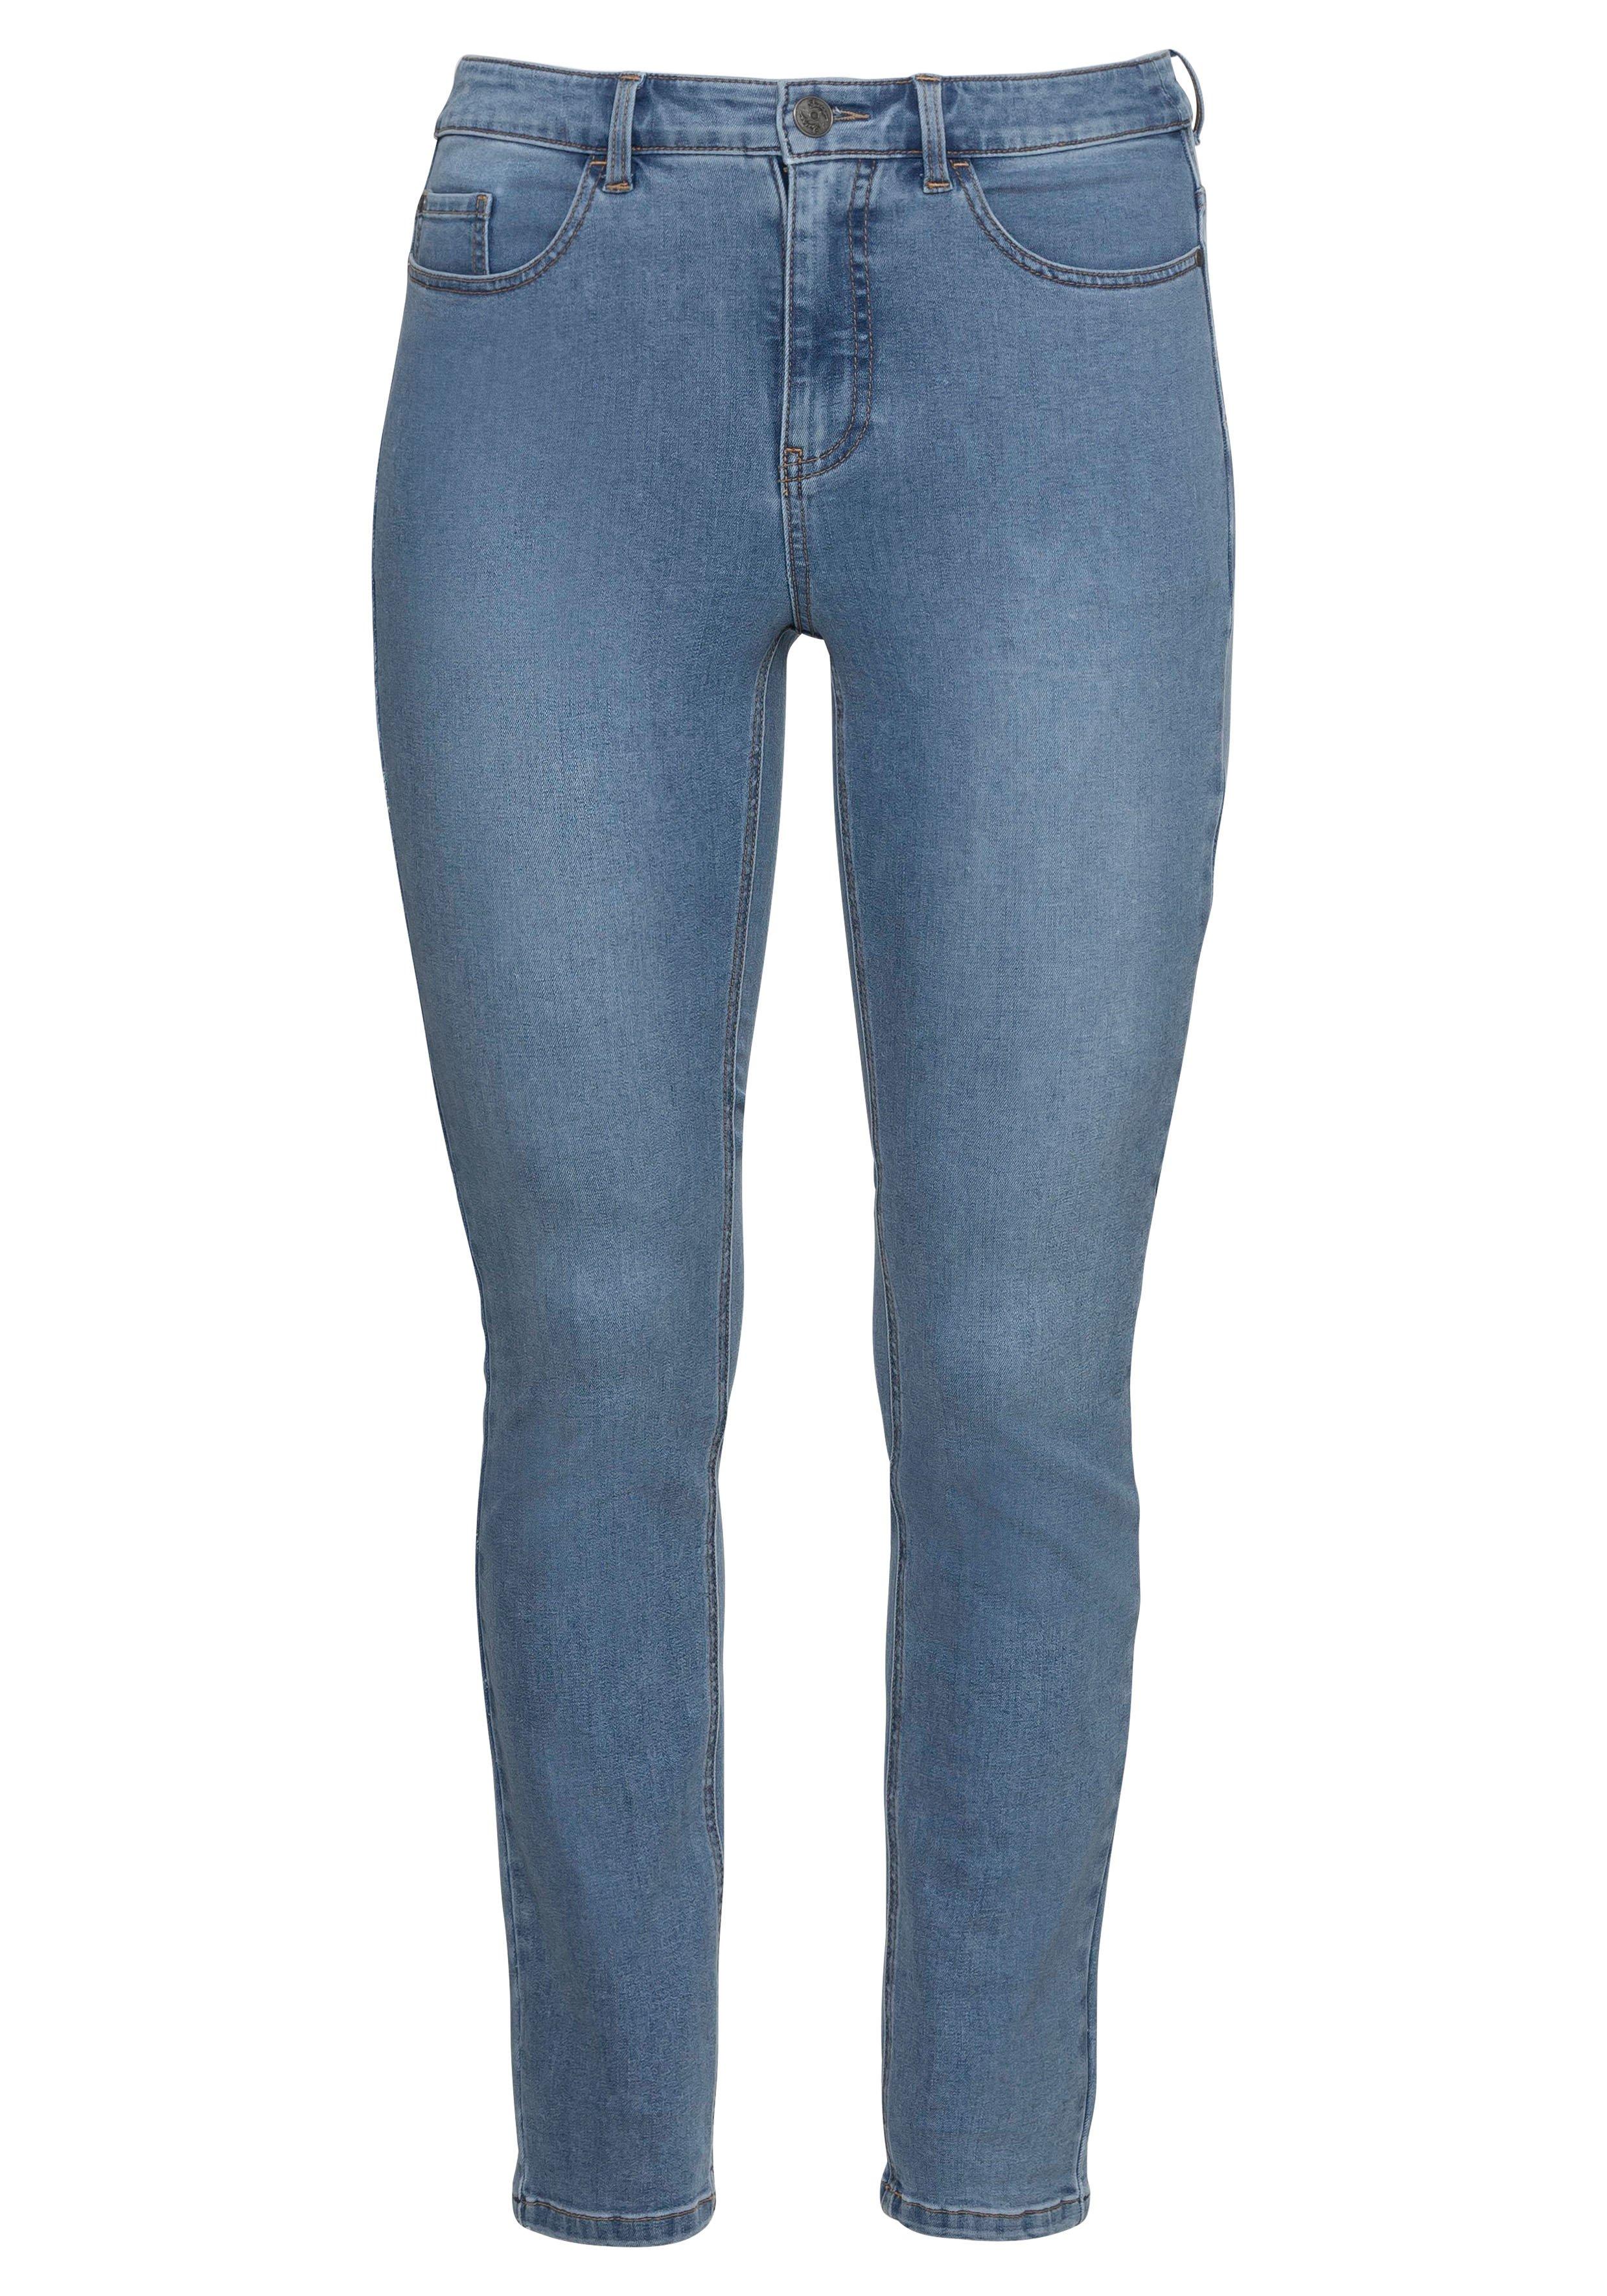 Skinny Power-Stretch-Jeans in 5-Pocket-Form - Denim sheego blue | dark